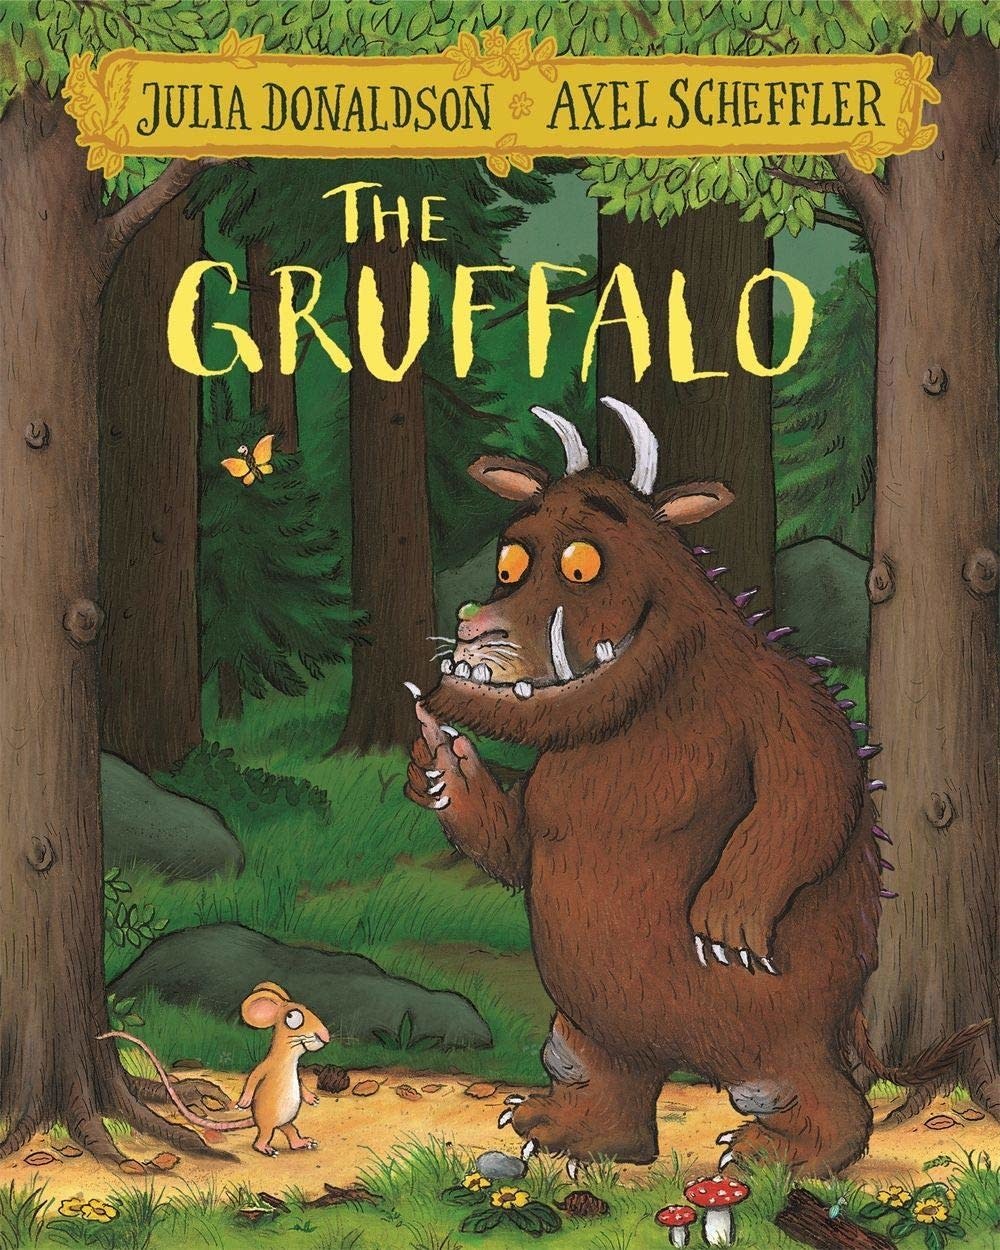 The Gruffalo by Julia Donaldson (3+)